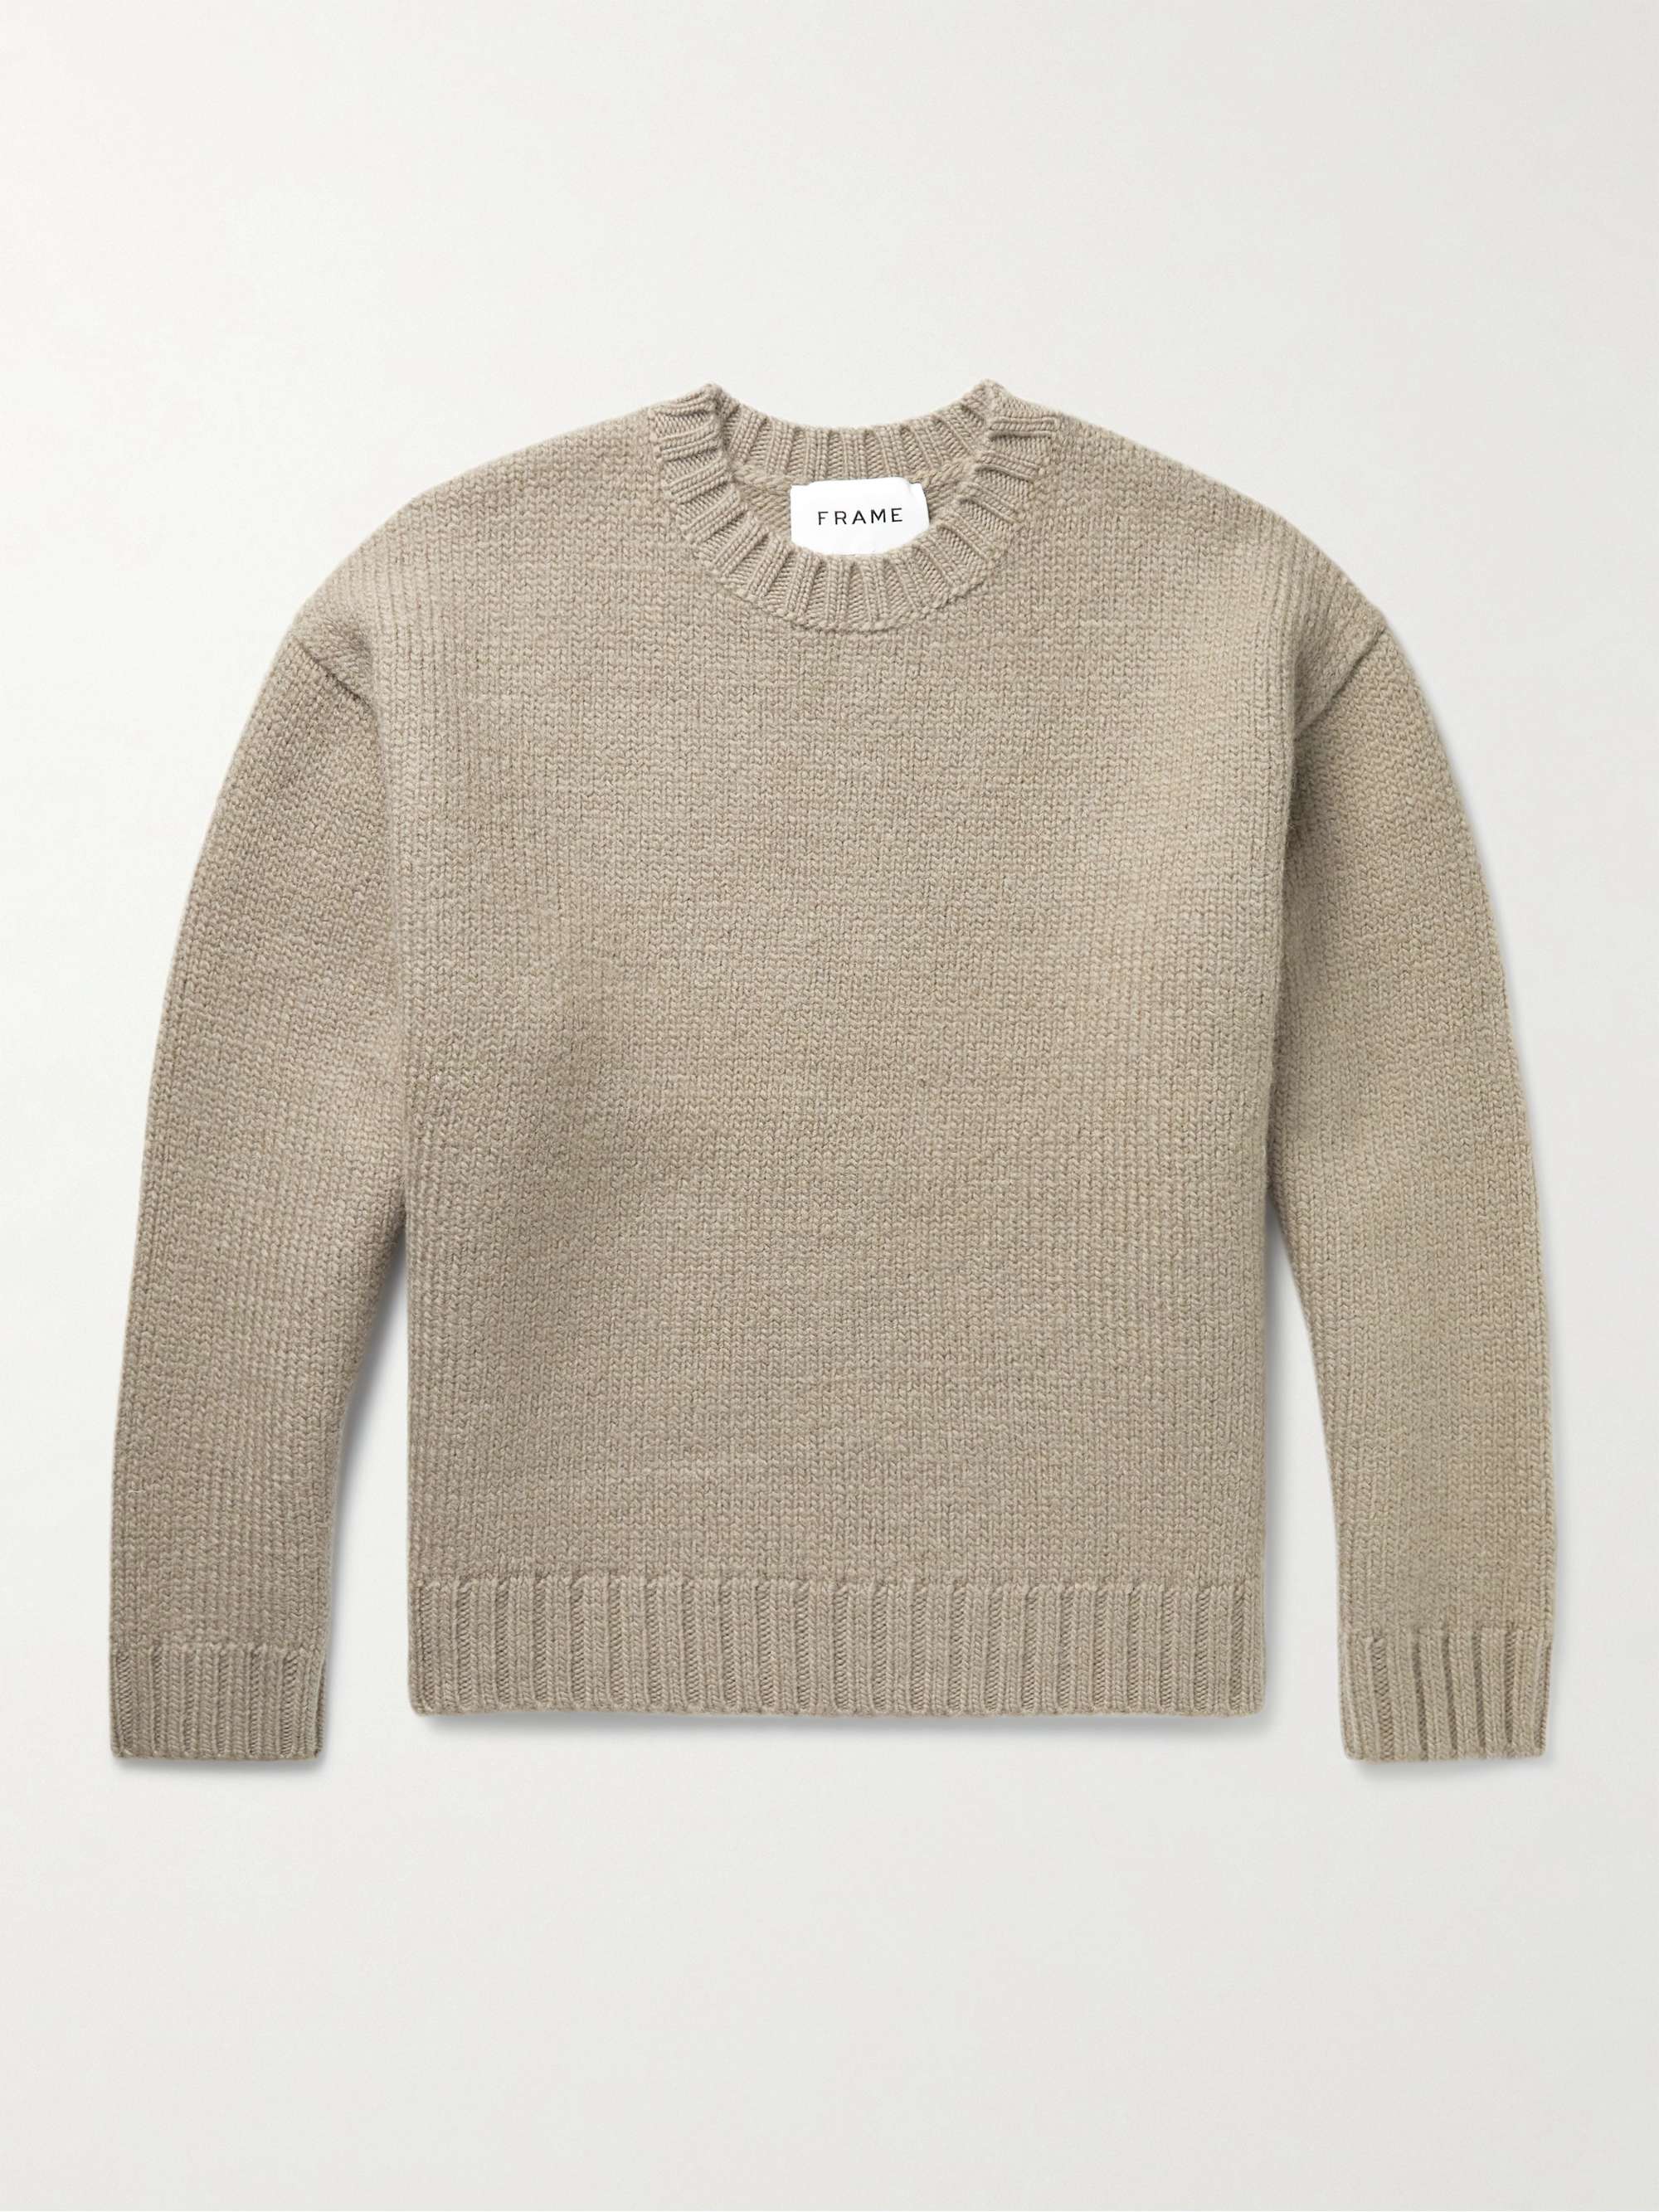 FRAME Wool Sweater for Men | MR PORTER